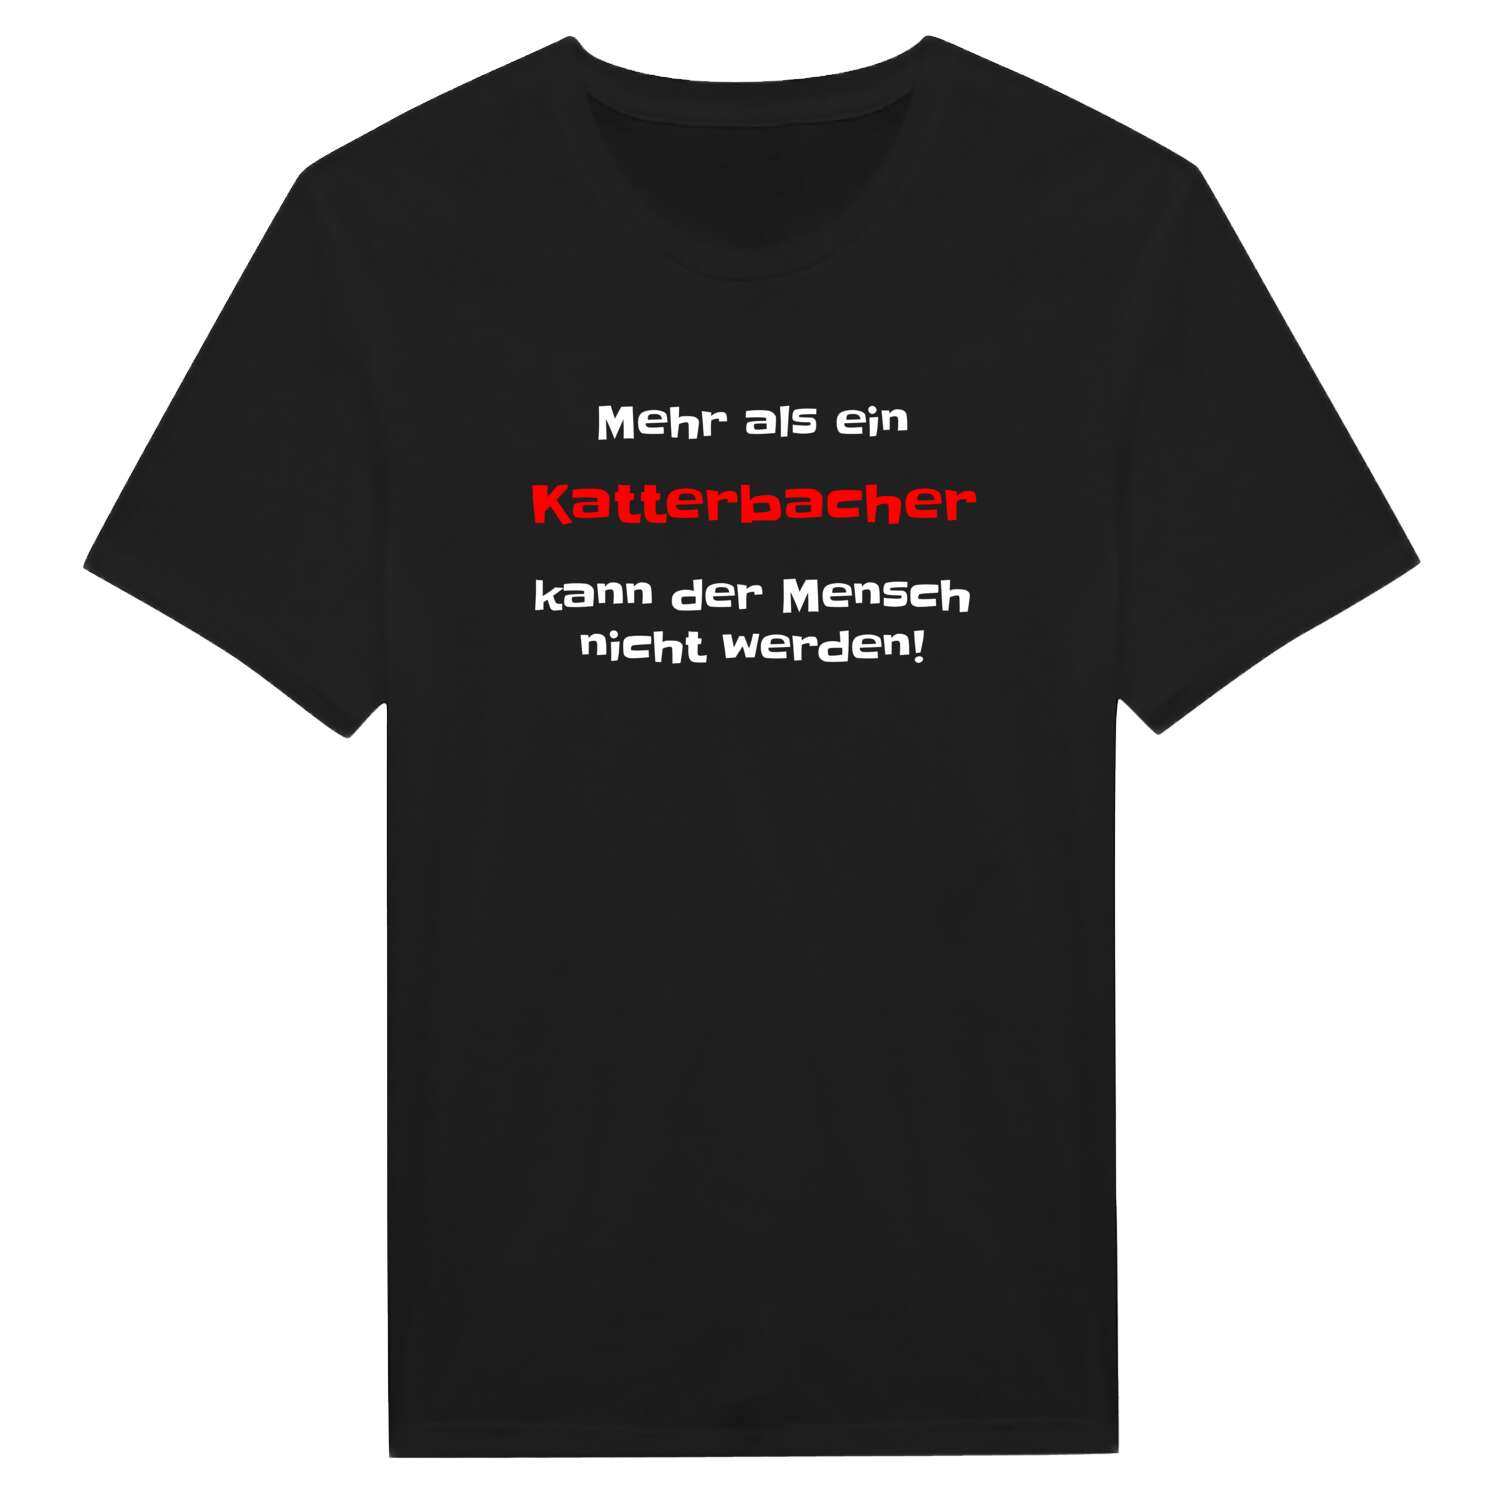 Katterbach T-Shirt »Mehr als ein«